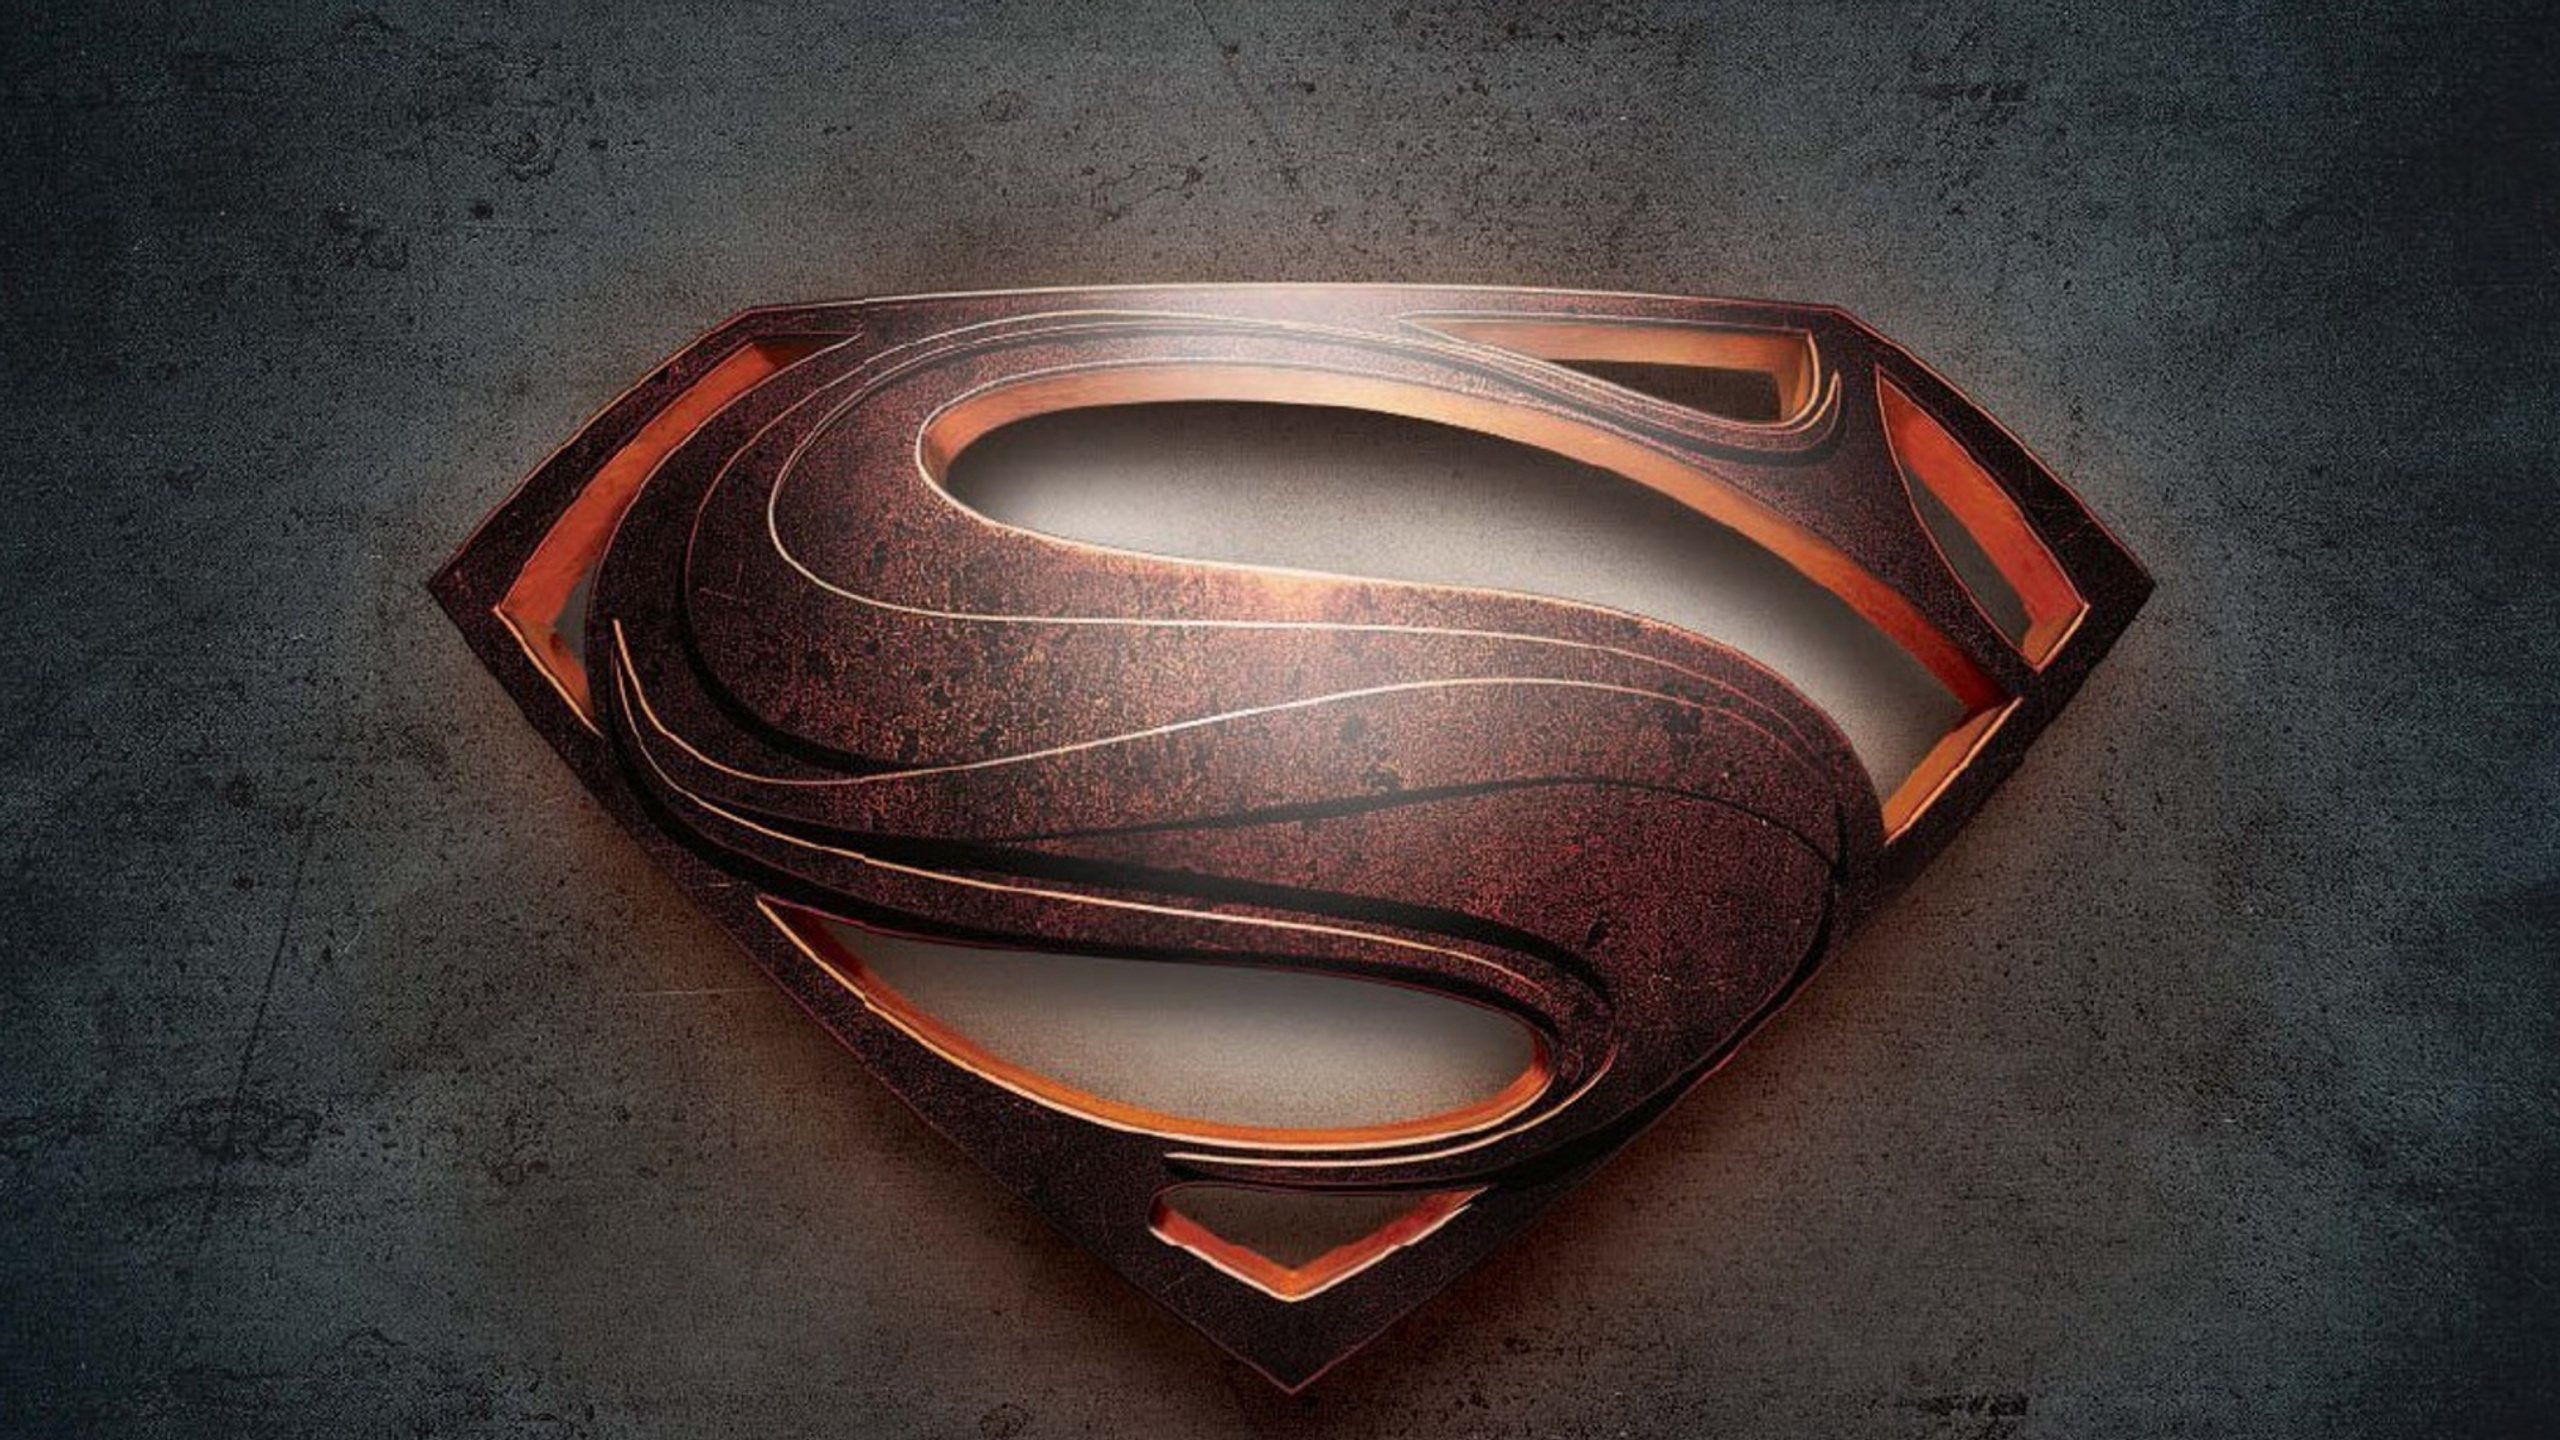 超人的标志, 新的超人 壁纸 2560x1440 允许